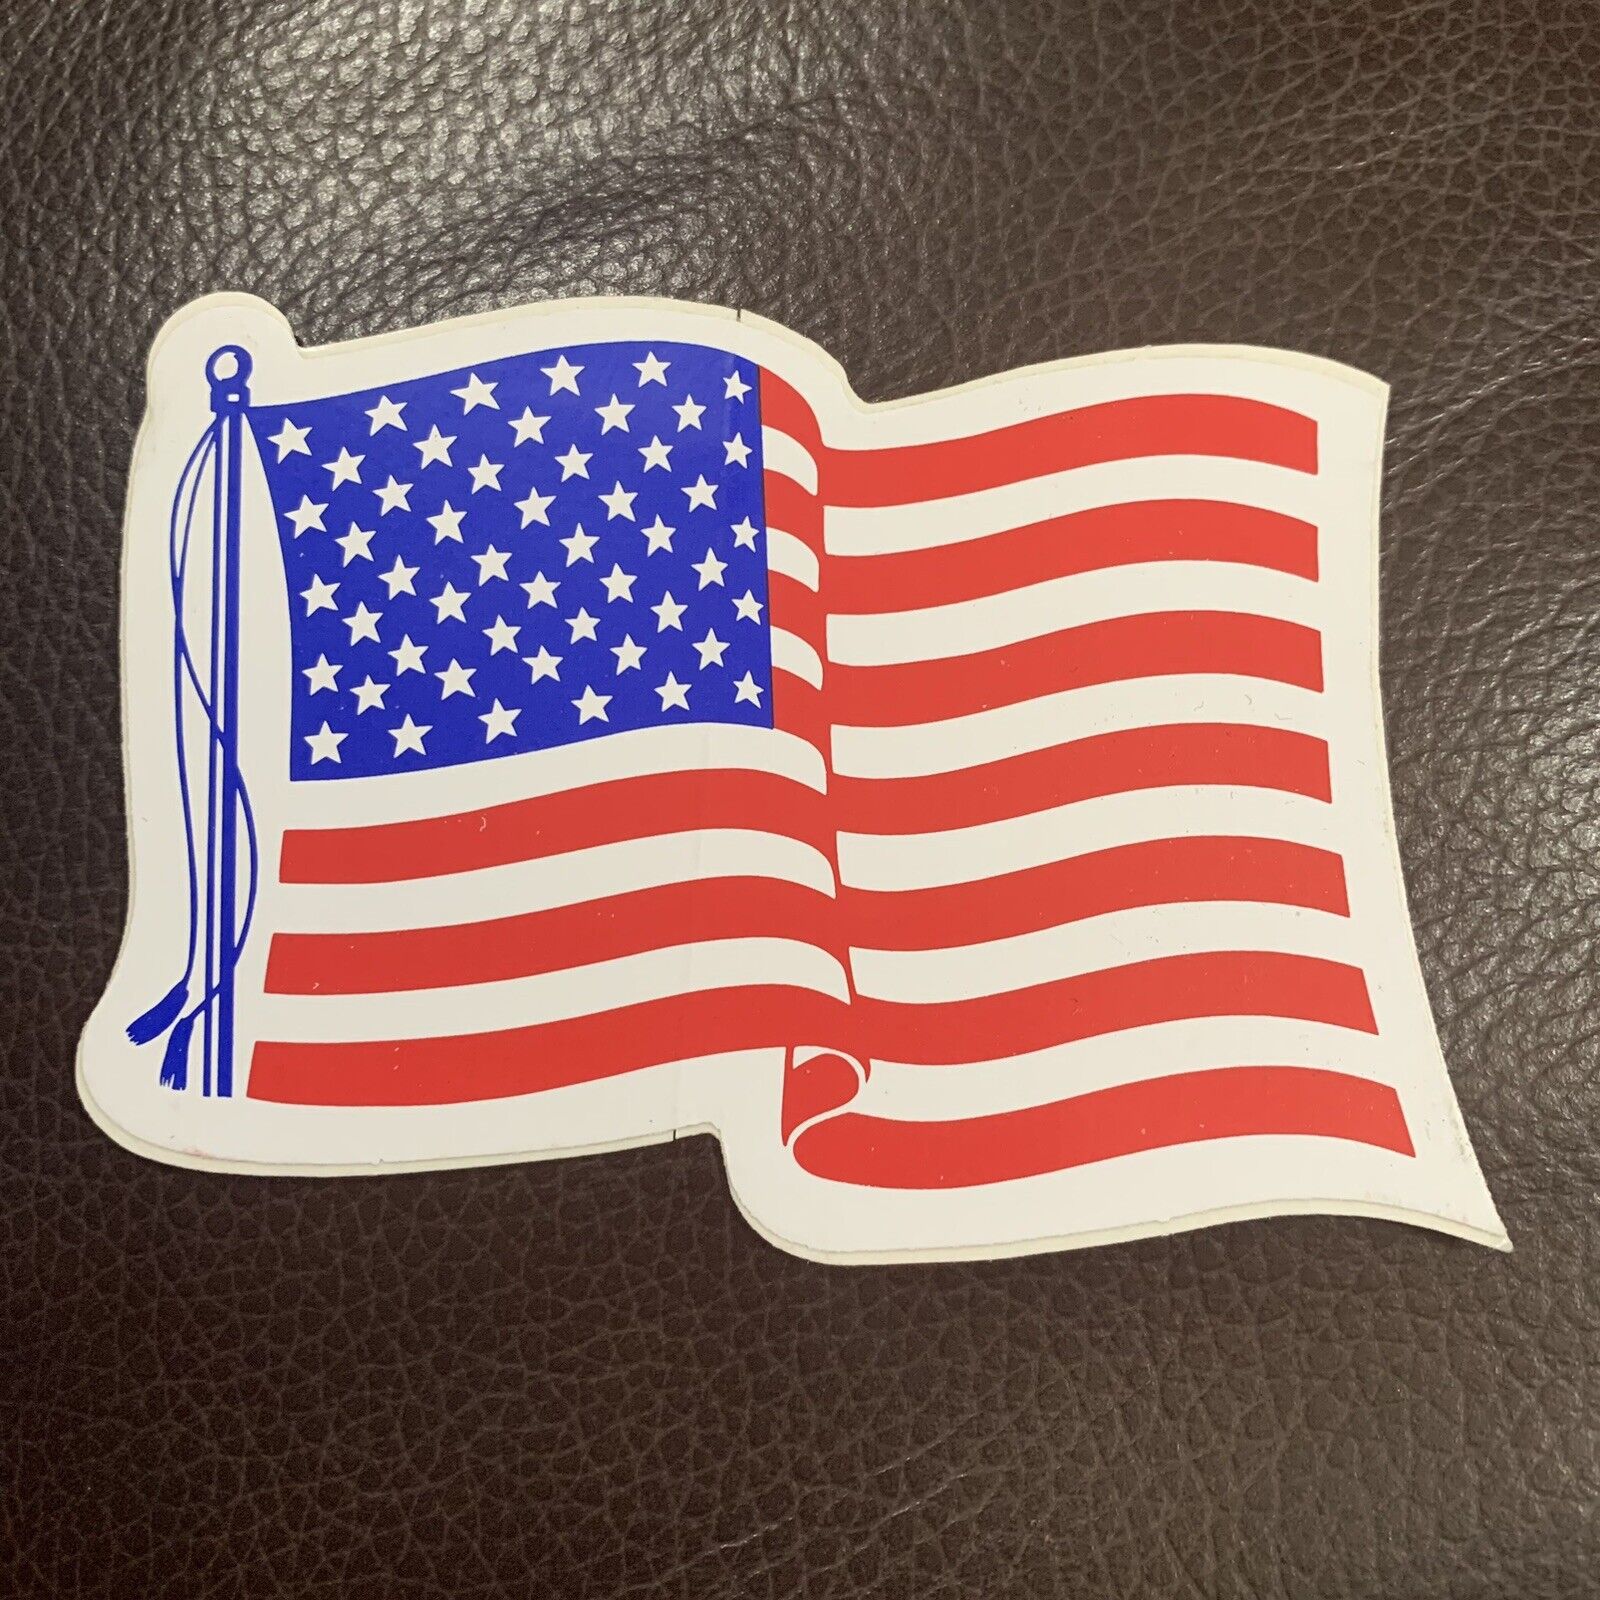 American Flag Wavy Sticker 4”x2.5”